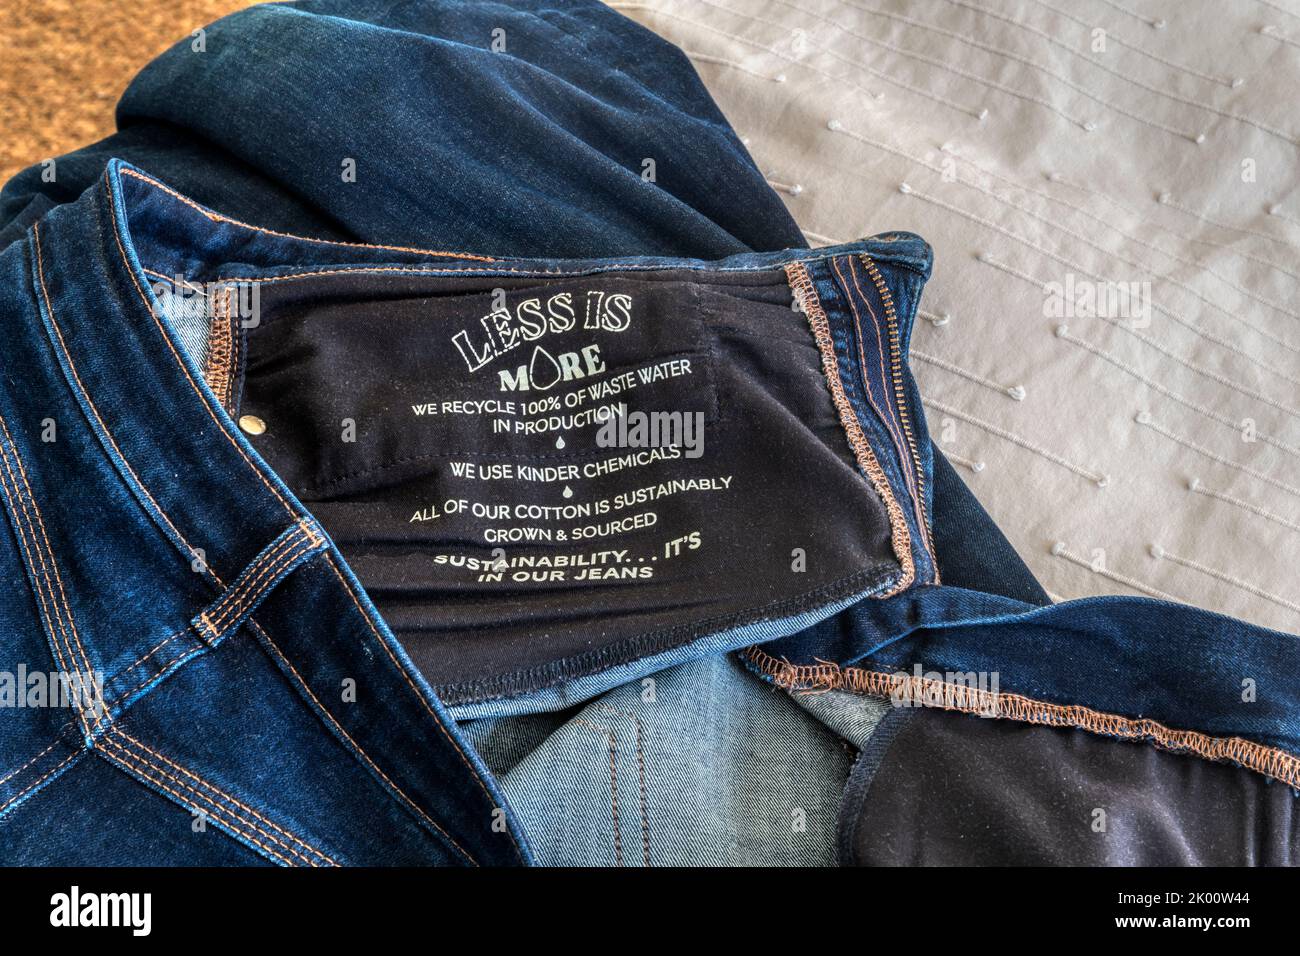 L'étiquette dans une paire de jeans M&S indique les façons dont leur production est plus durable. Banque D'Images